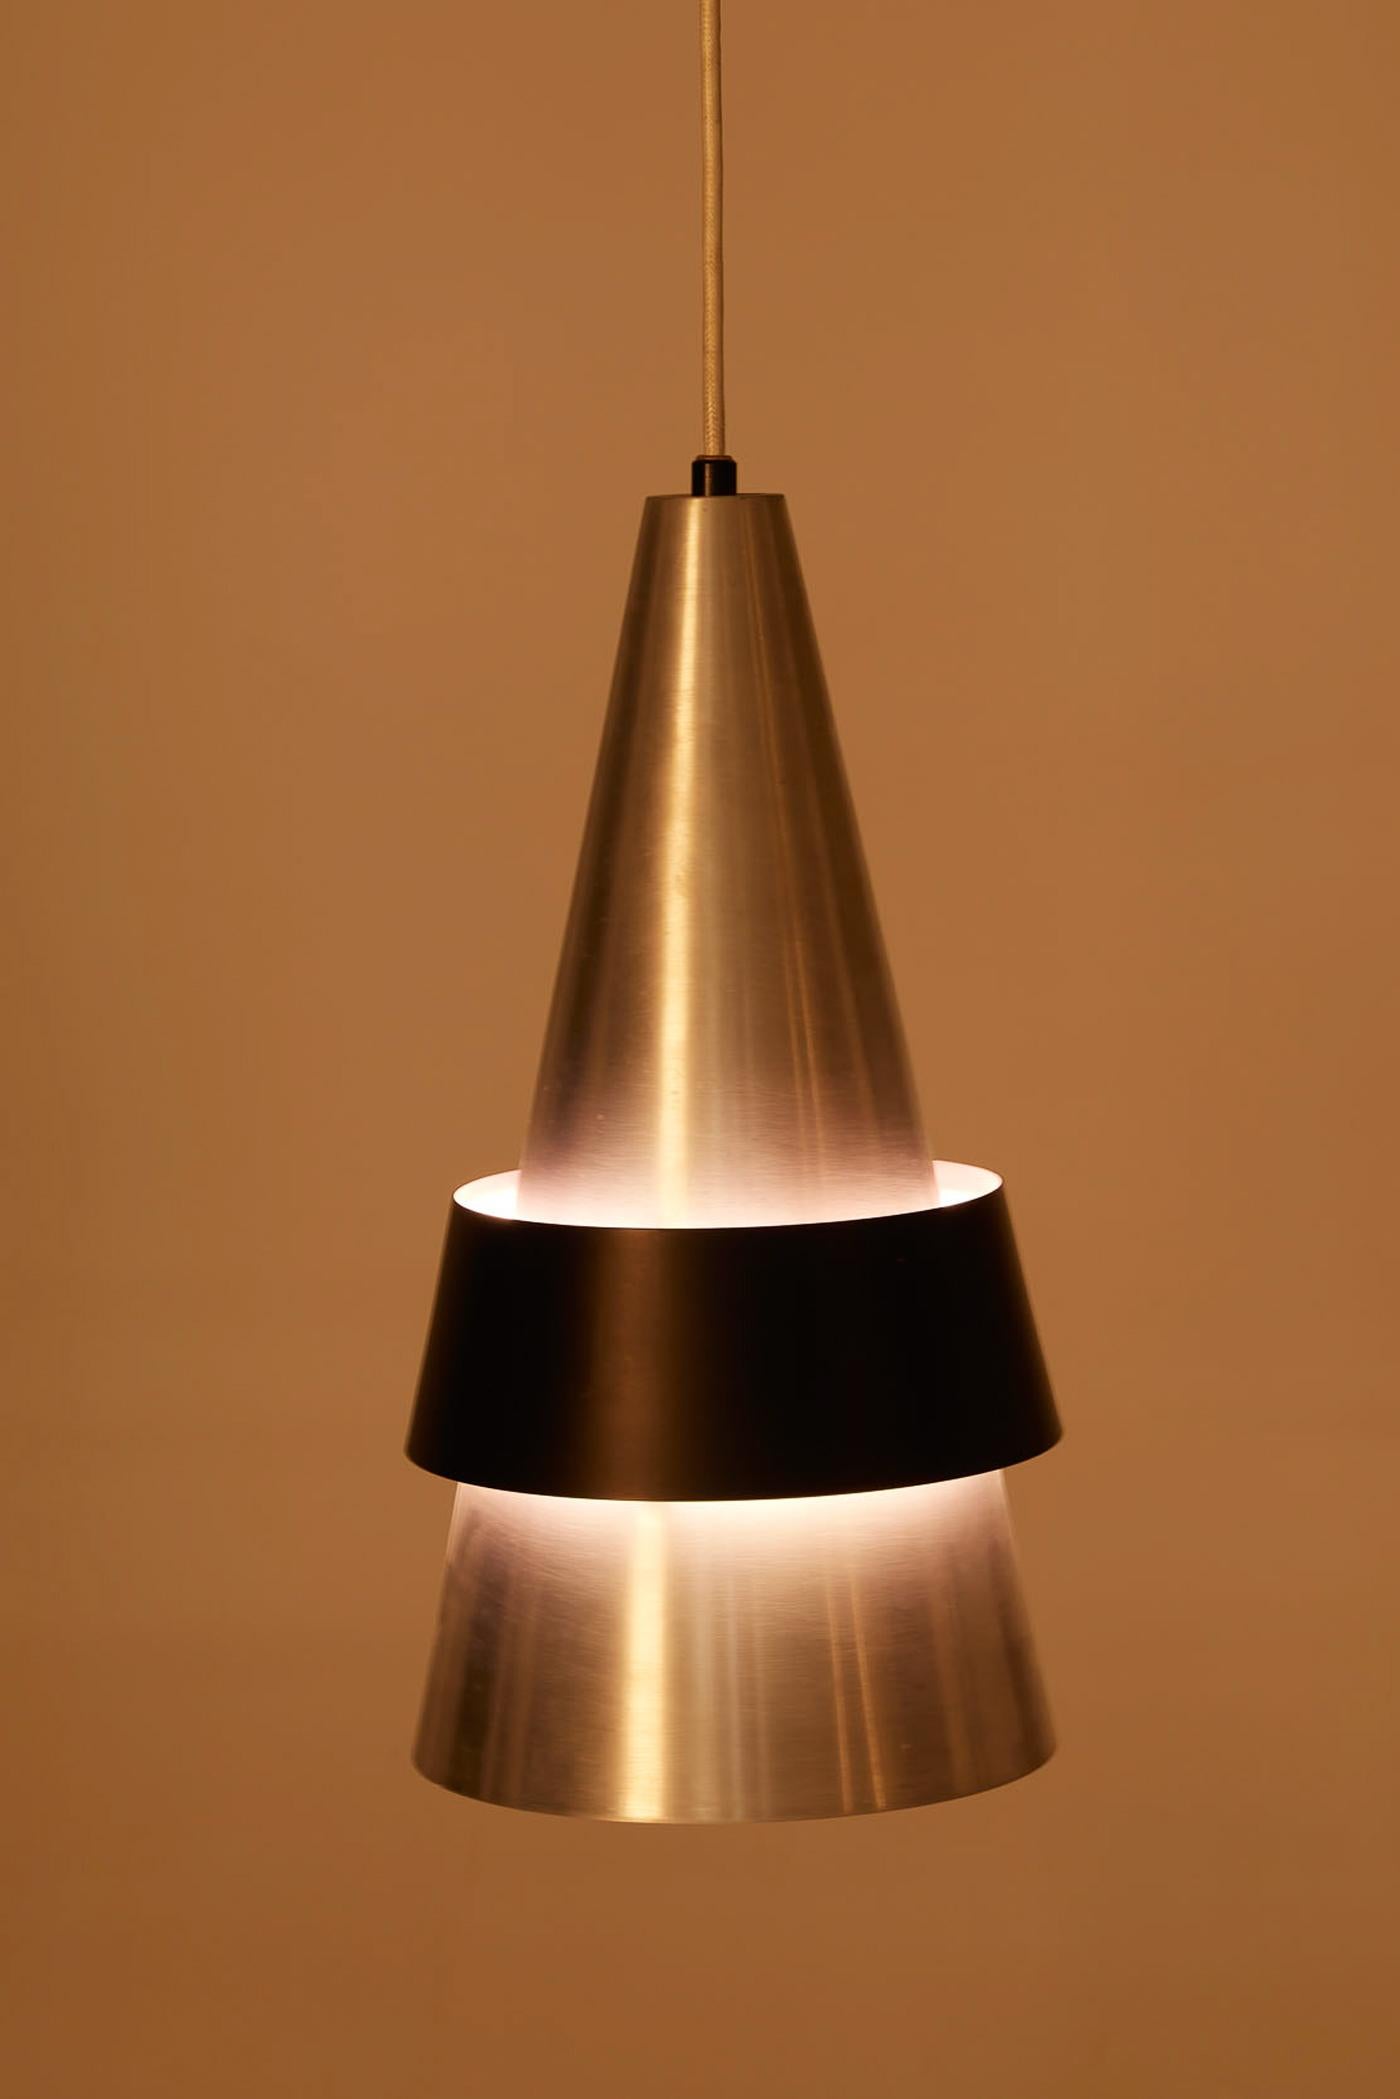 Corona-Pendelleuchte des dänischen Designers Jo Hammerborg für Fog & Mørup, aus den 1960er Jahren. Der konische Reflektor ist aus gebürstetem Metall mit einem schwarz lackierten Metallring gefertigt. Sehr guter Zustand.
DV430-DV431